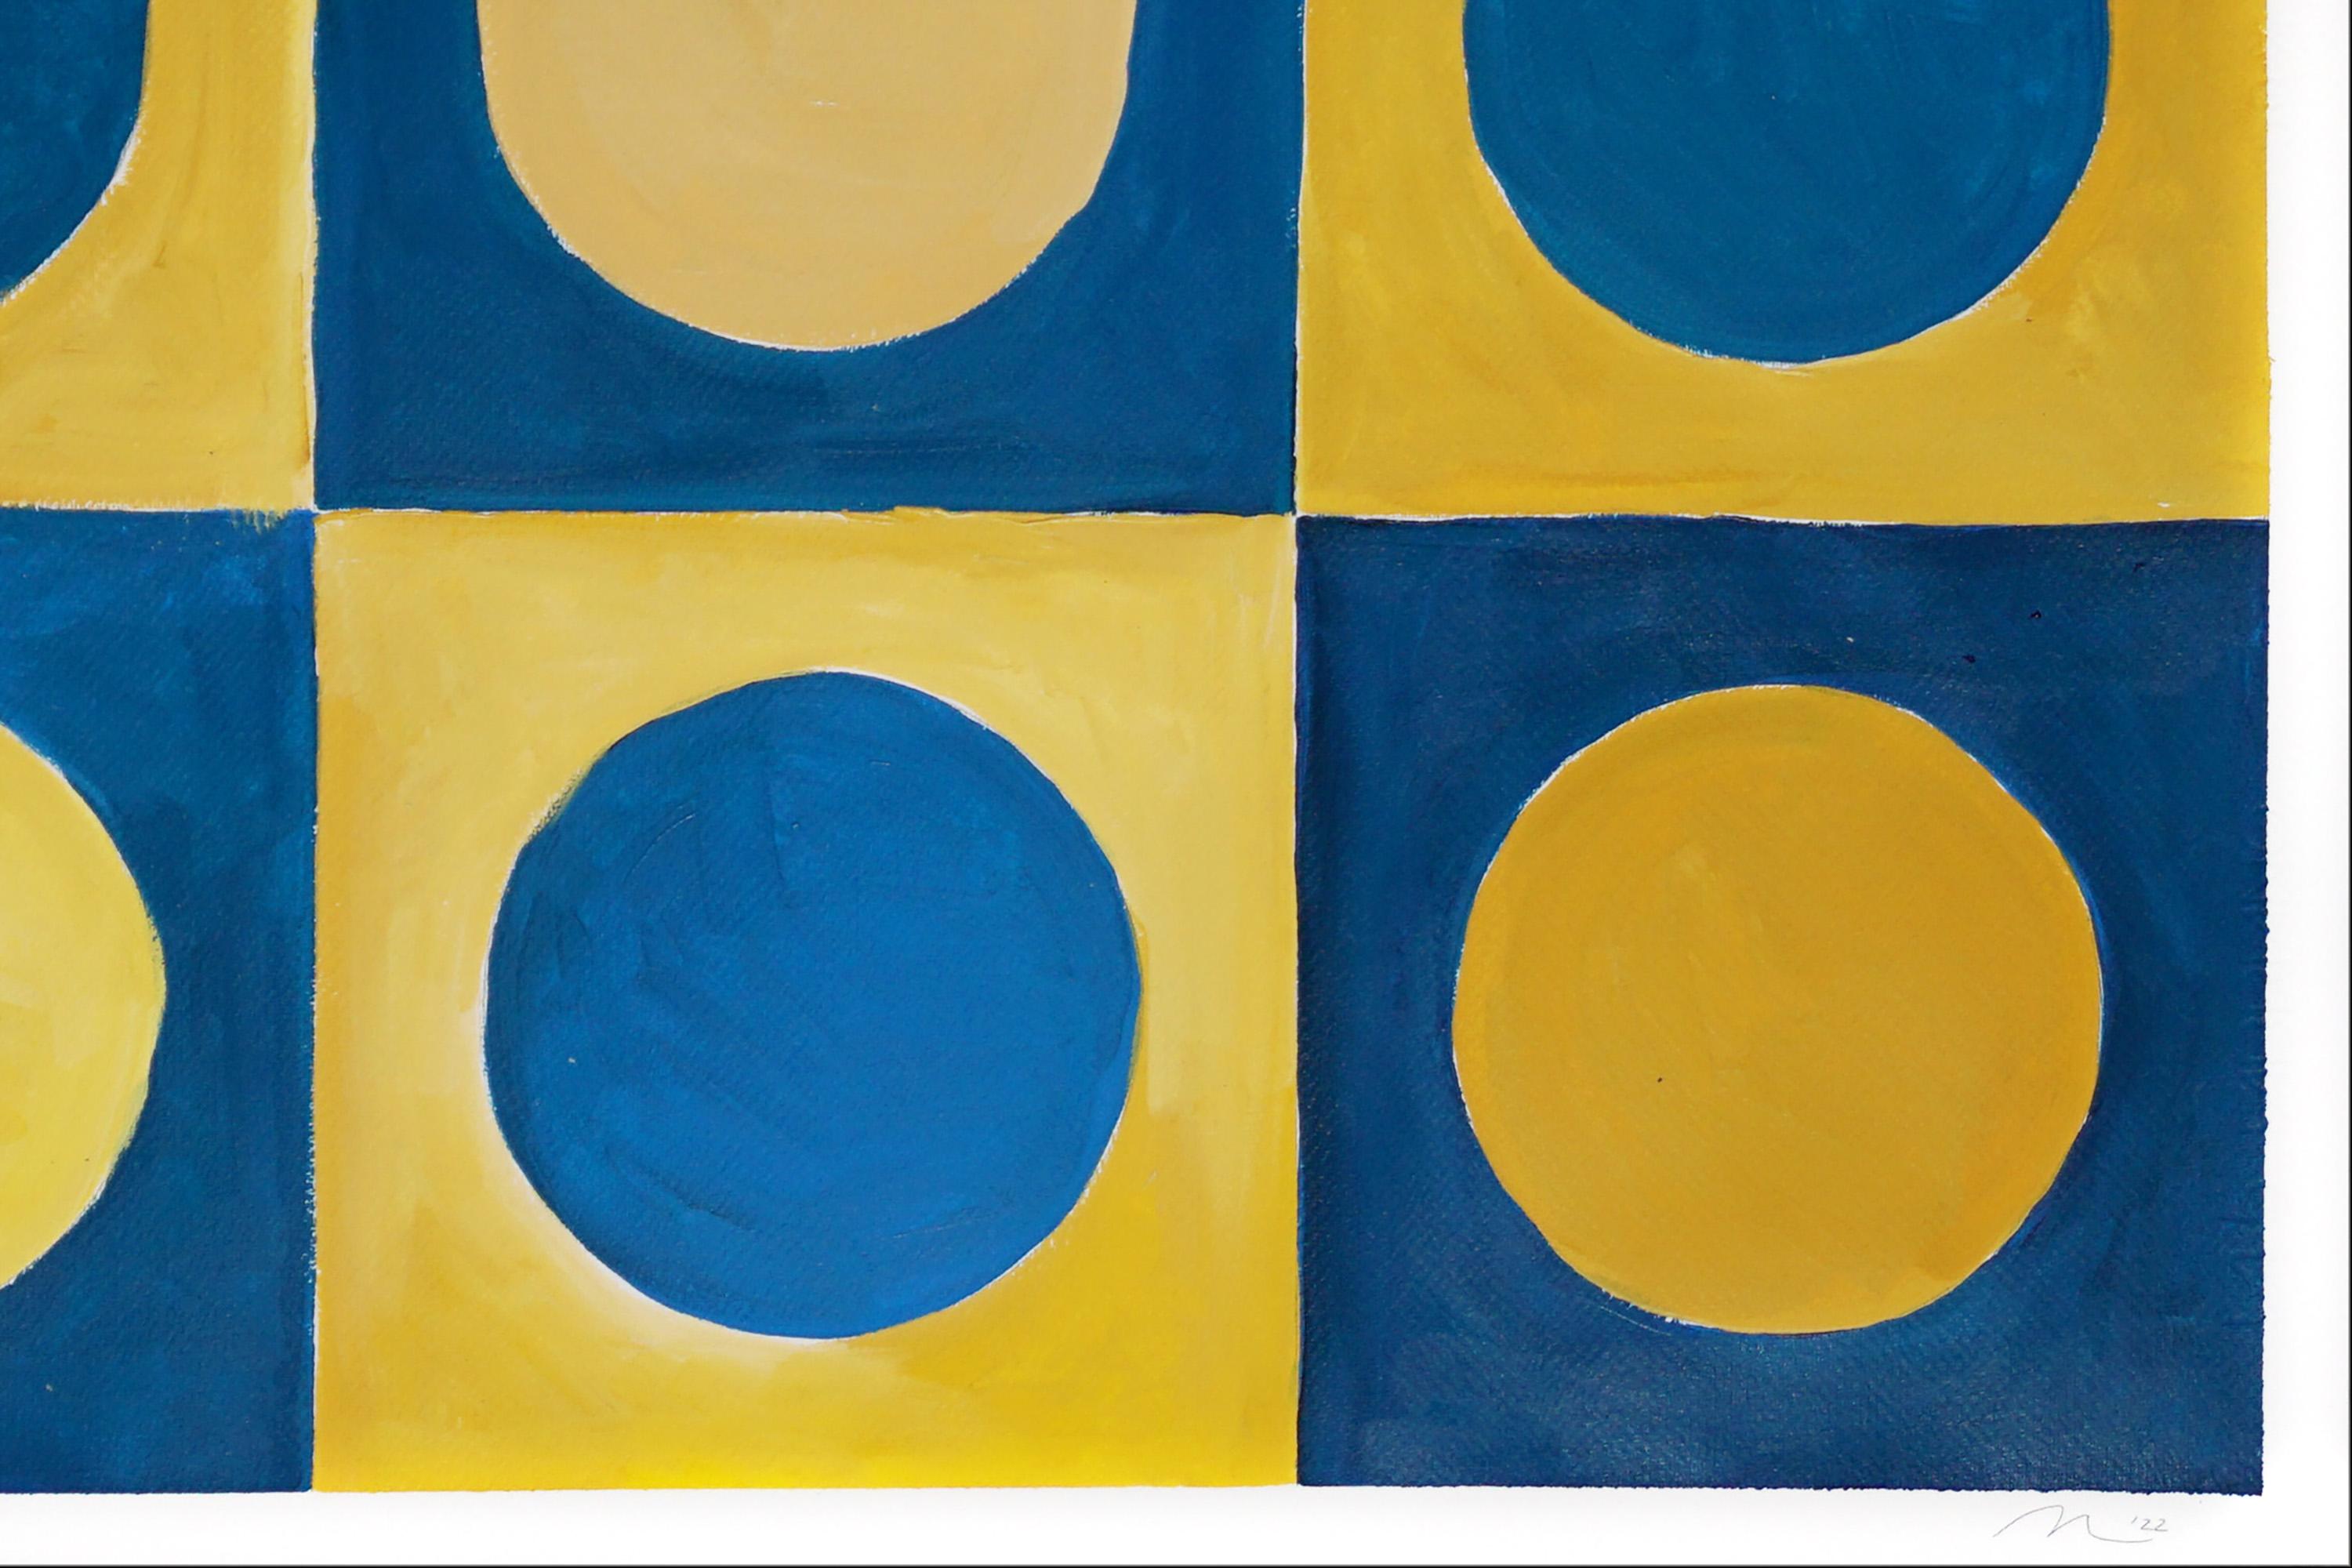 Blassblaue Punkte, Primärgeometrie Gitter, Gelb und Blau, Komplementärtöne  (Orange), Abstract Painting, von Natalia Roman